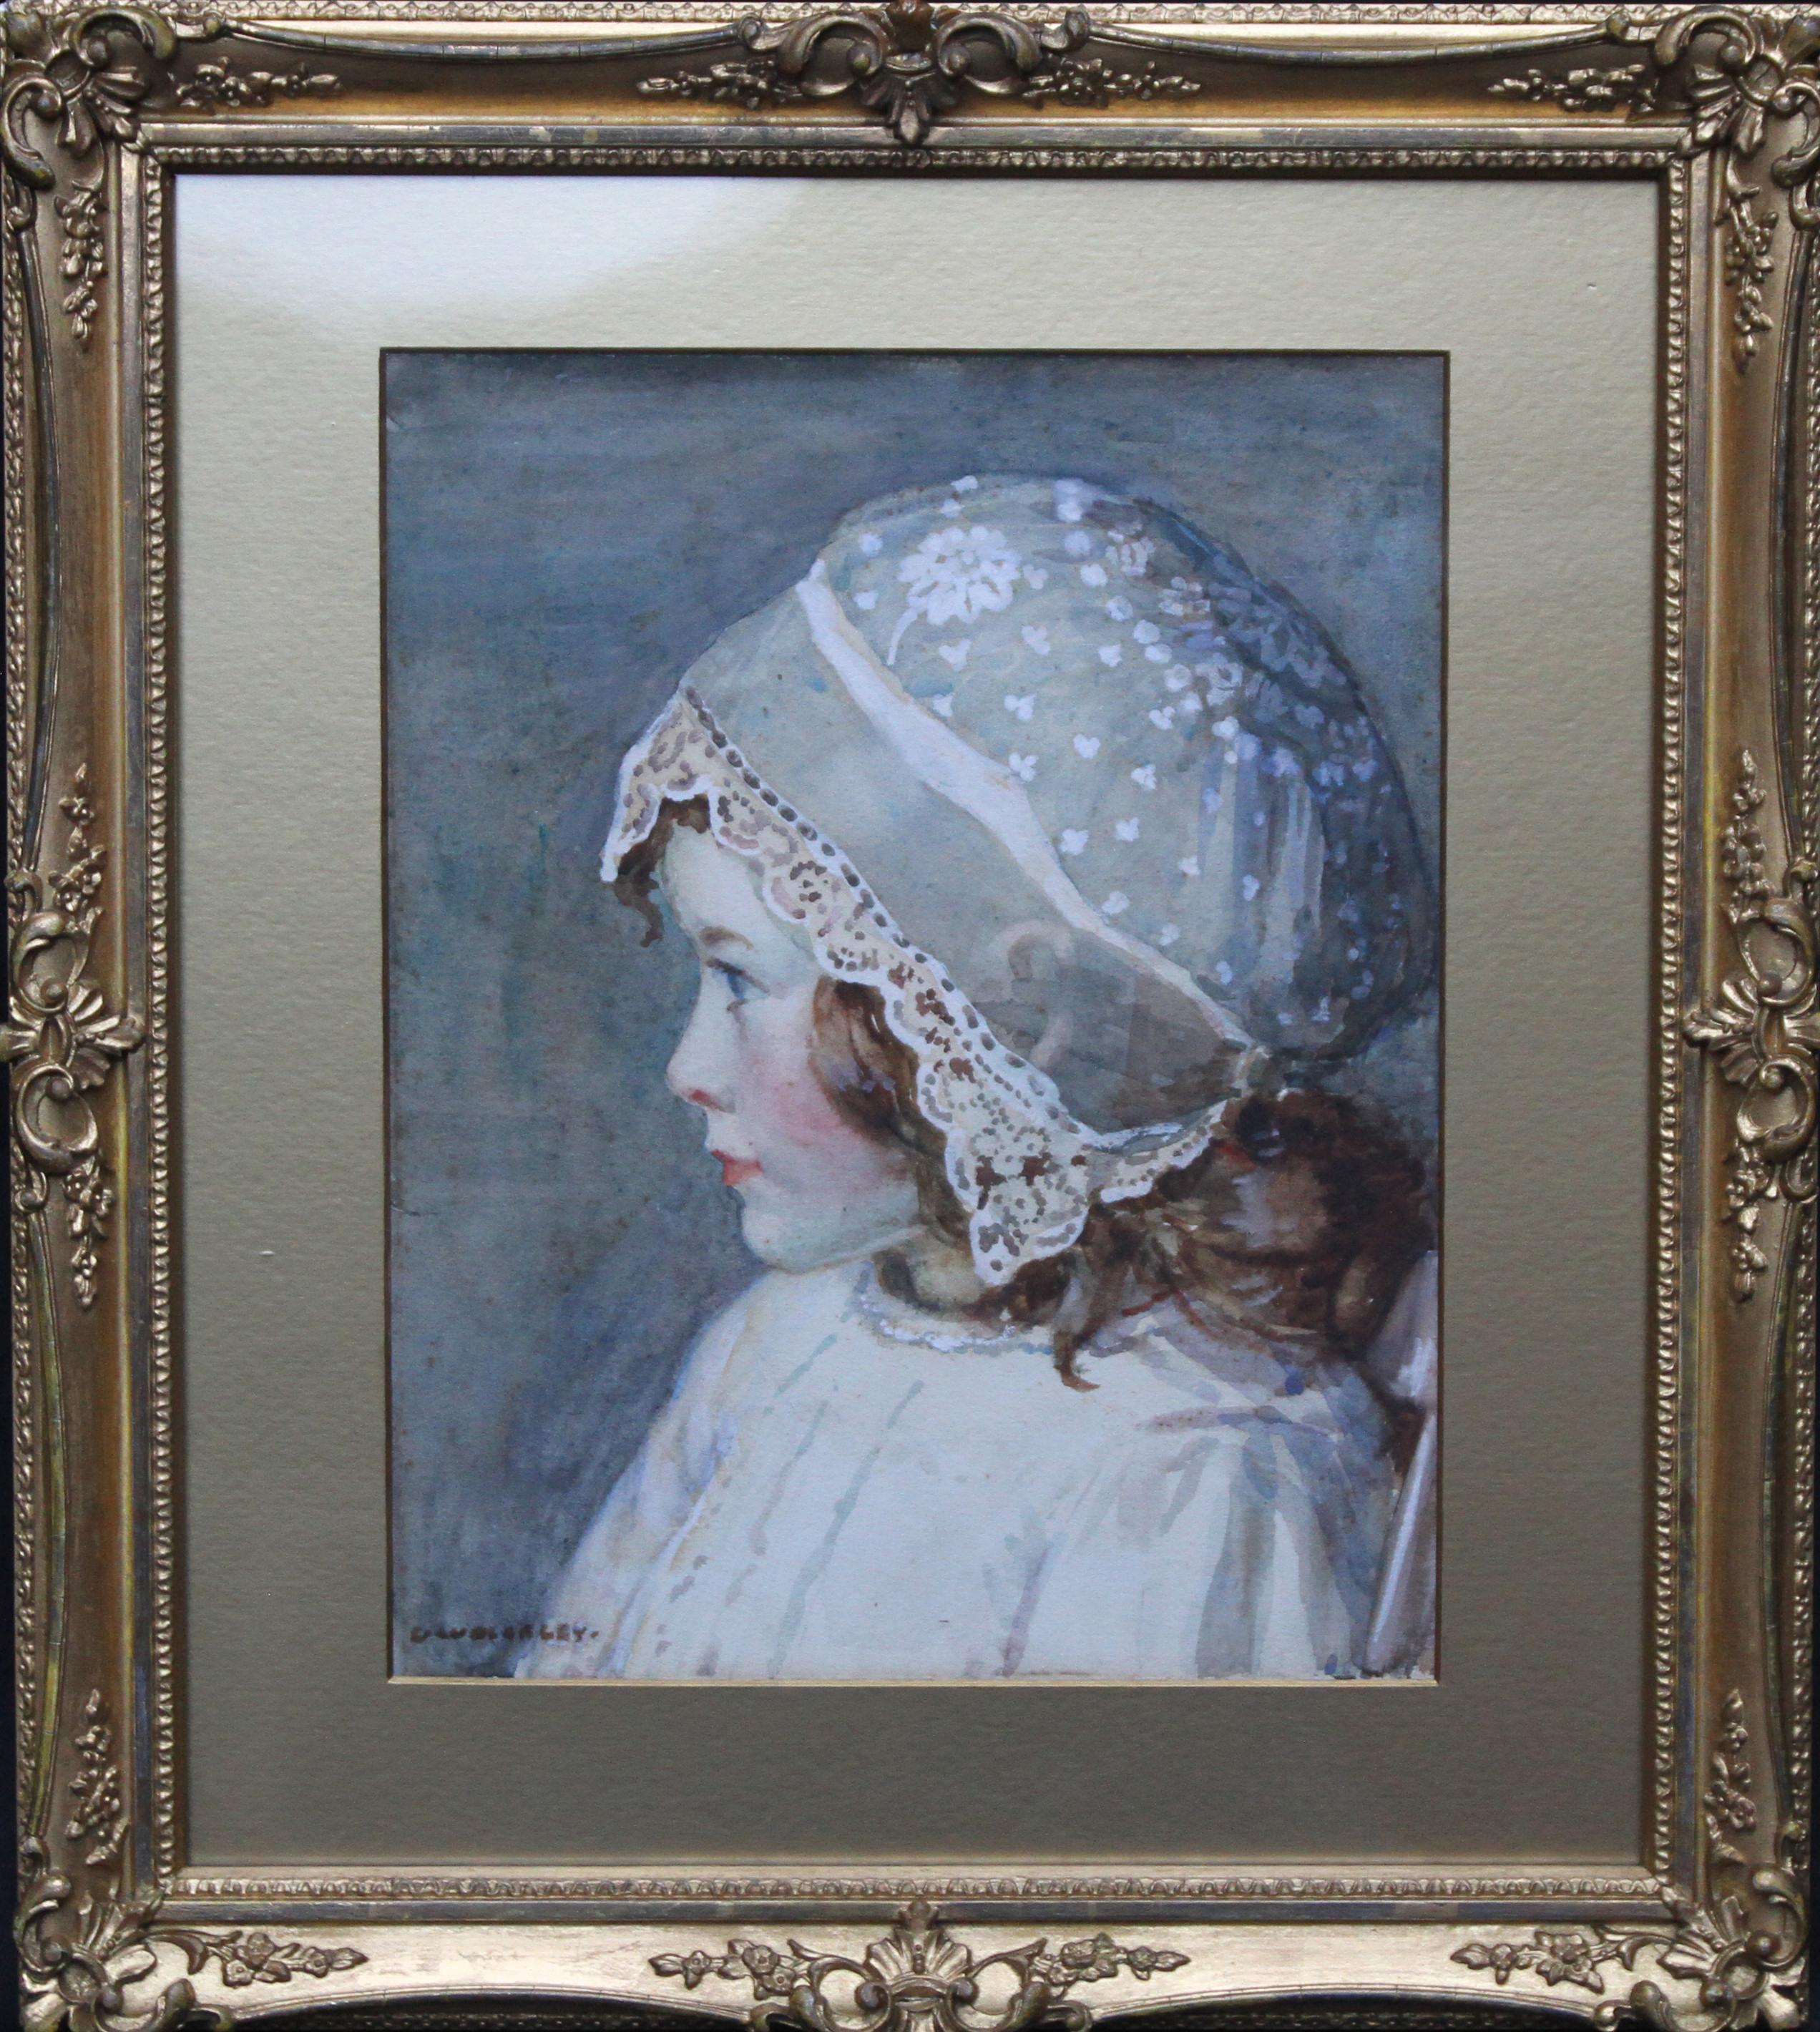 Portrait of a Girl in a Lace Bonnet -British art Edwardian Newlyn School exhibit - Art by Garnet Ruskin Wolseley